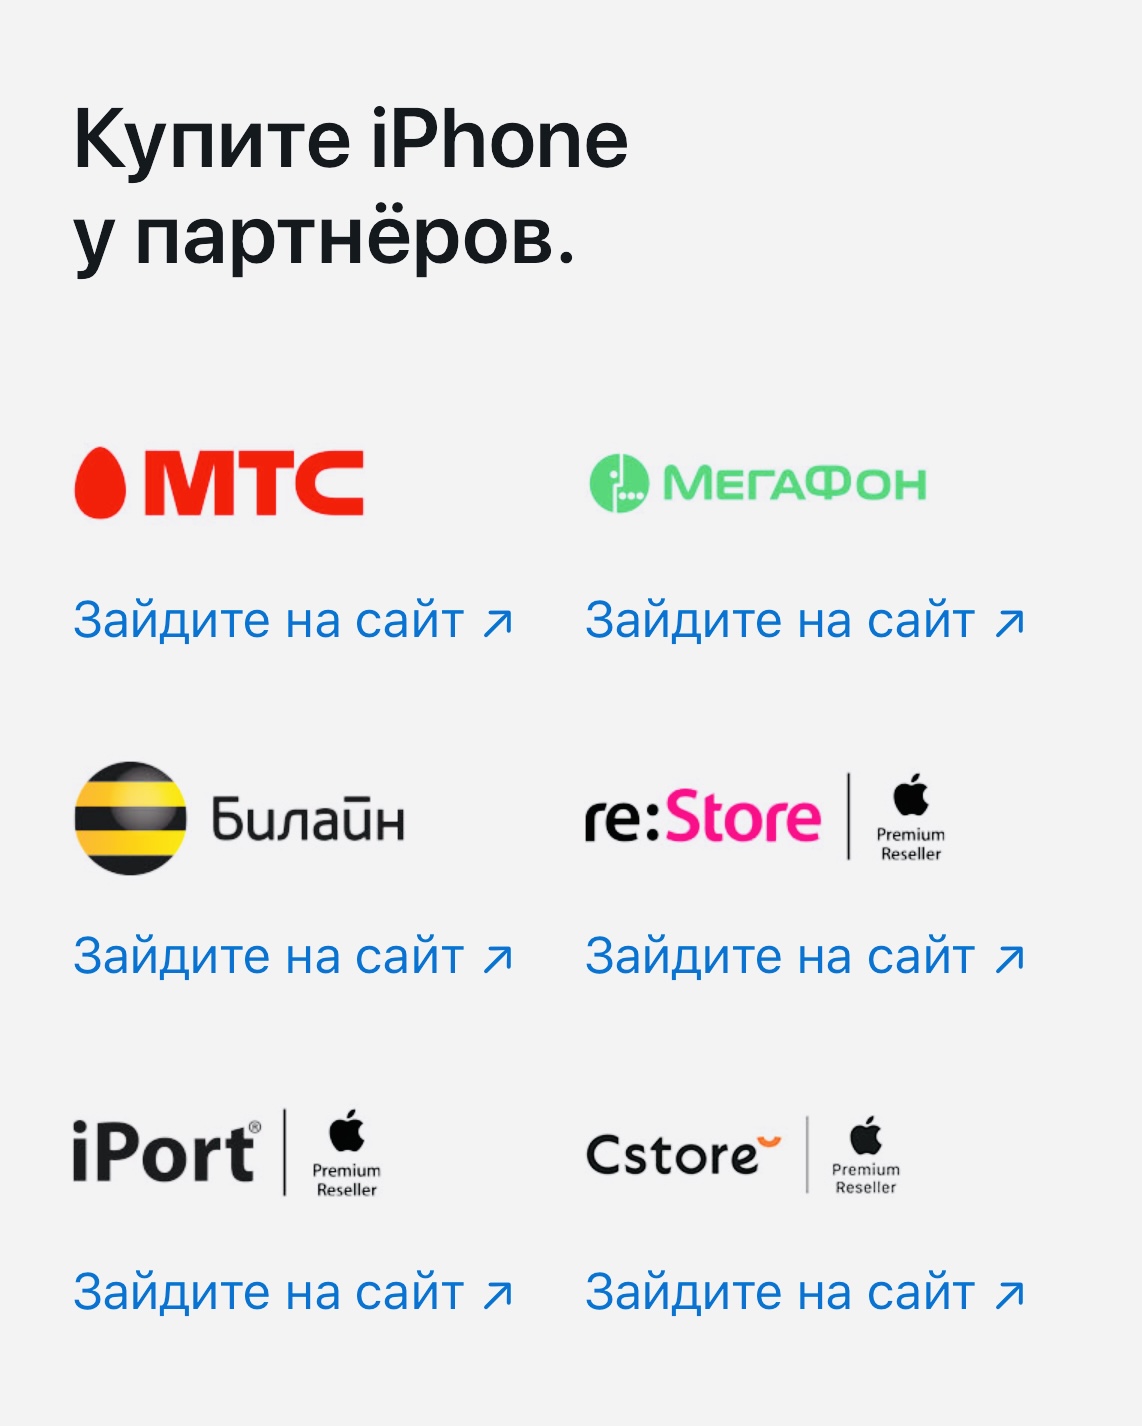 Сайт Apple рекомендует список партнеров в России, где можно купить iPhone